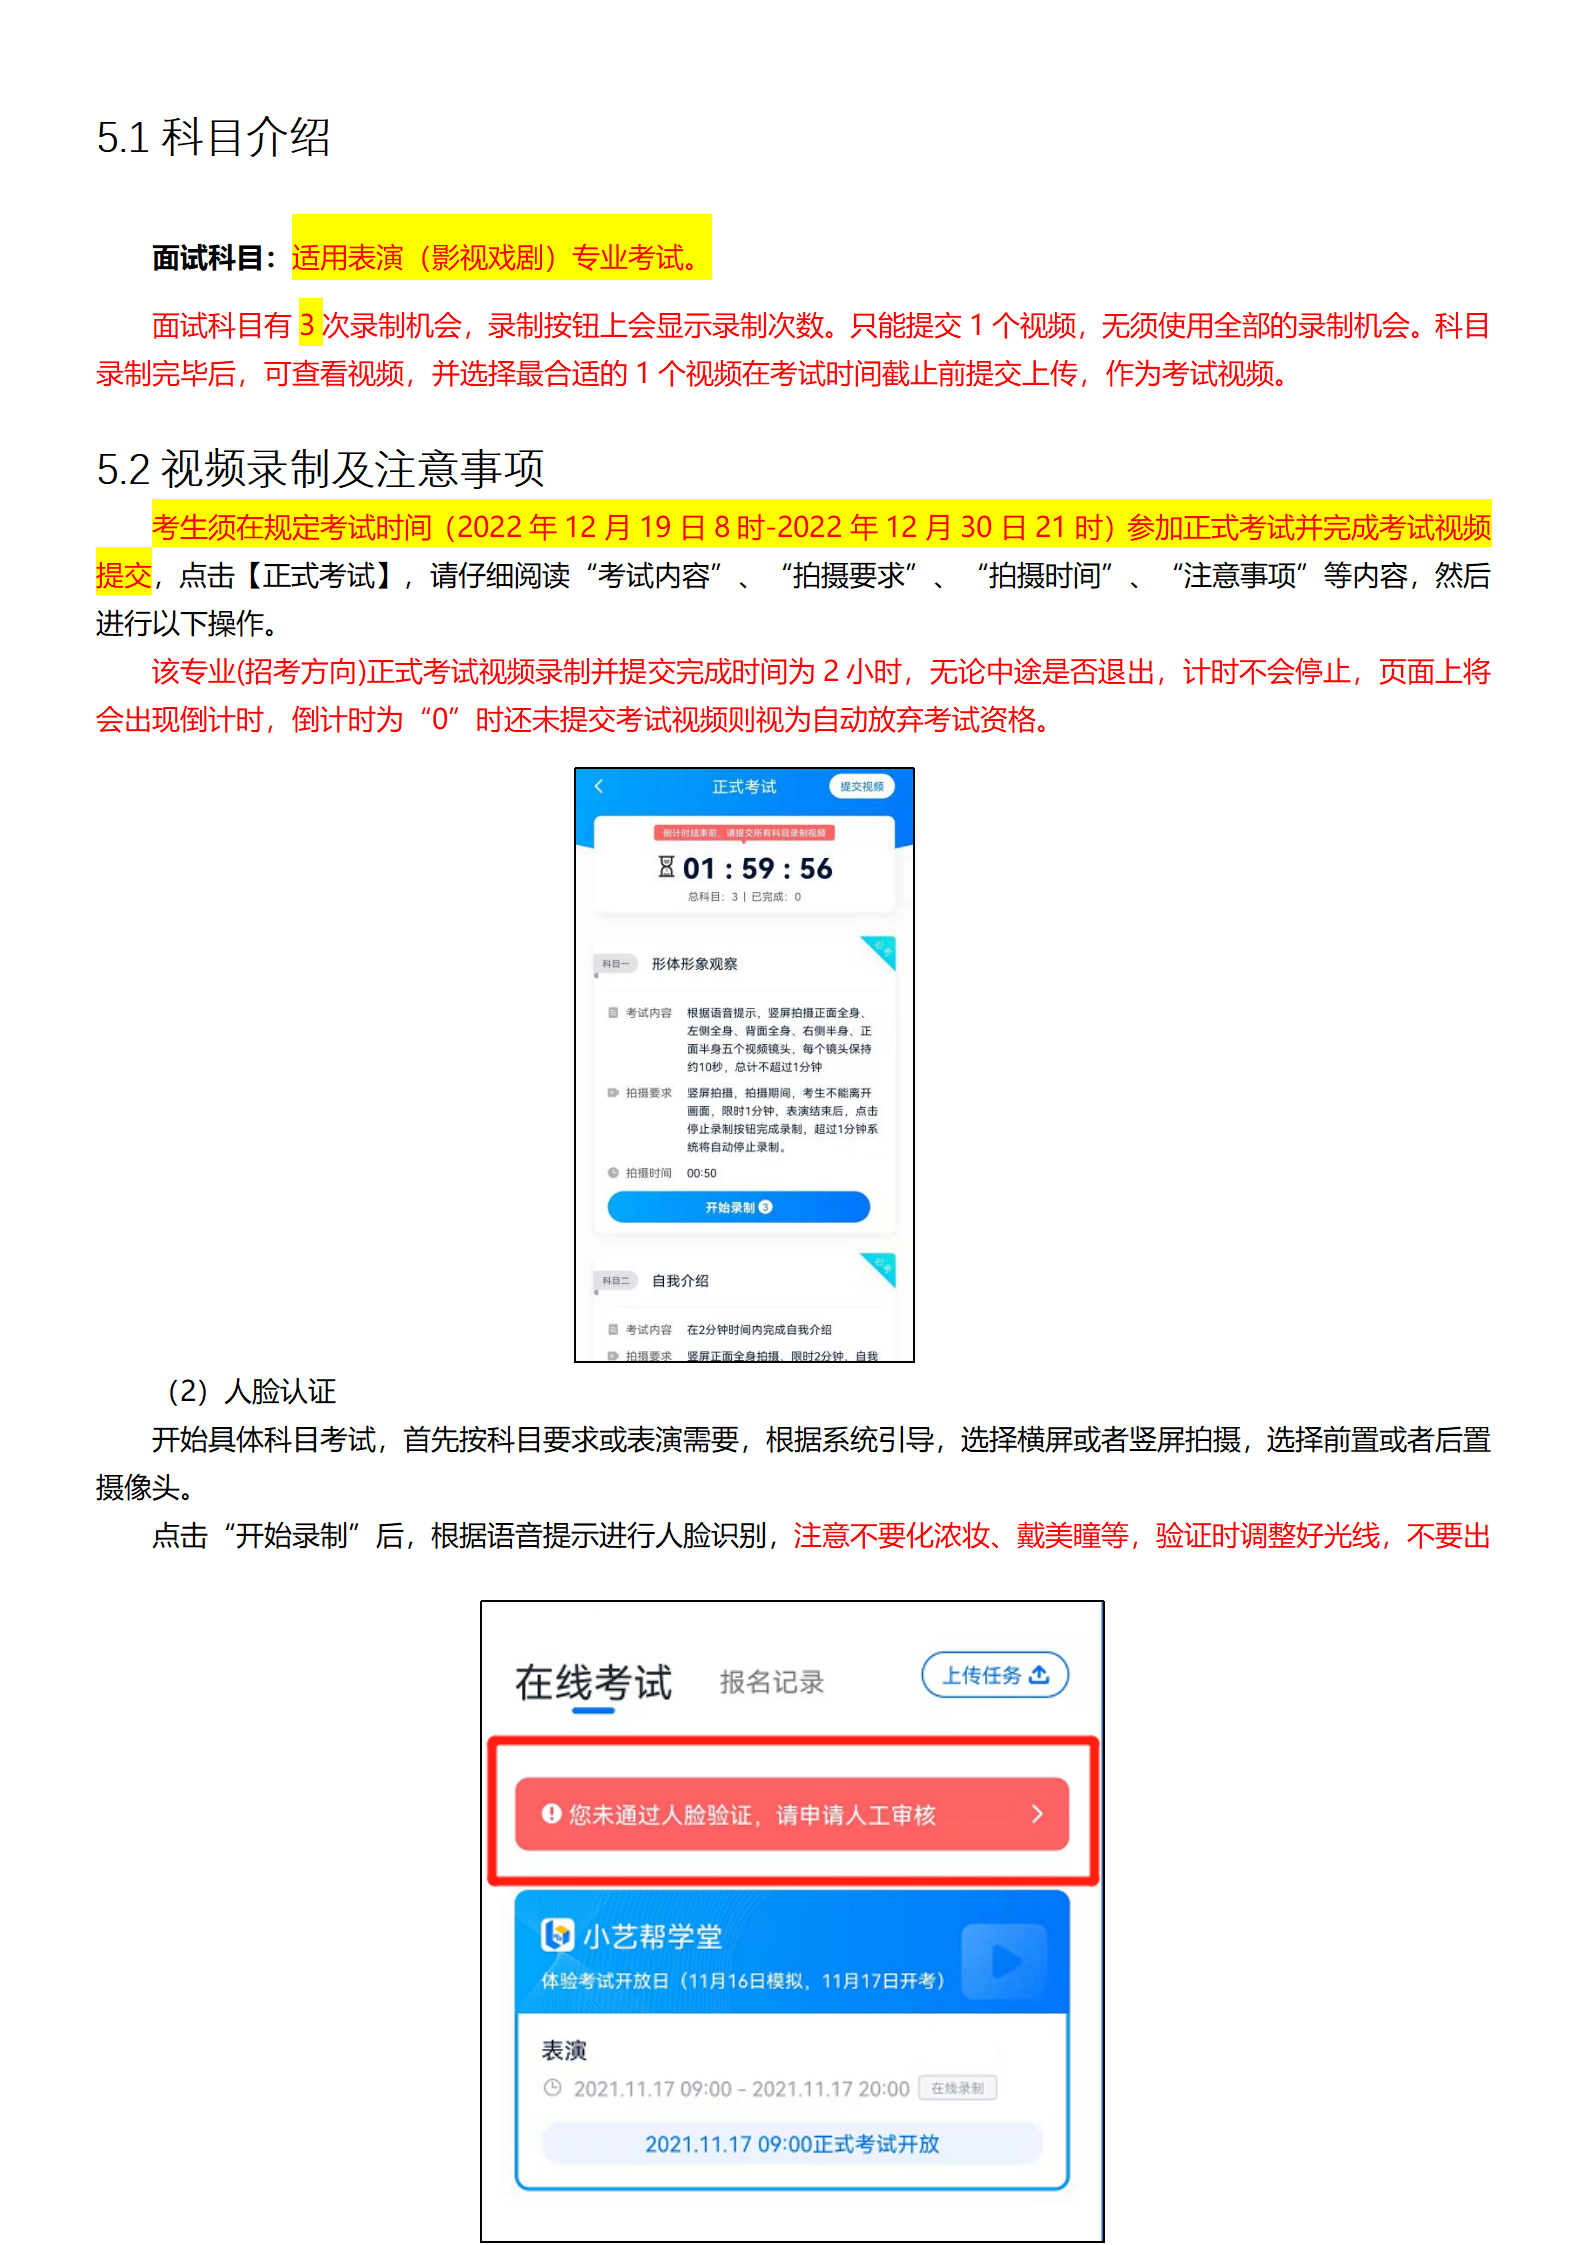 附件1：深圳大学-小艺帮4.0用户操作手册_08.png